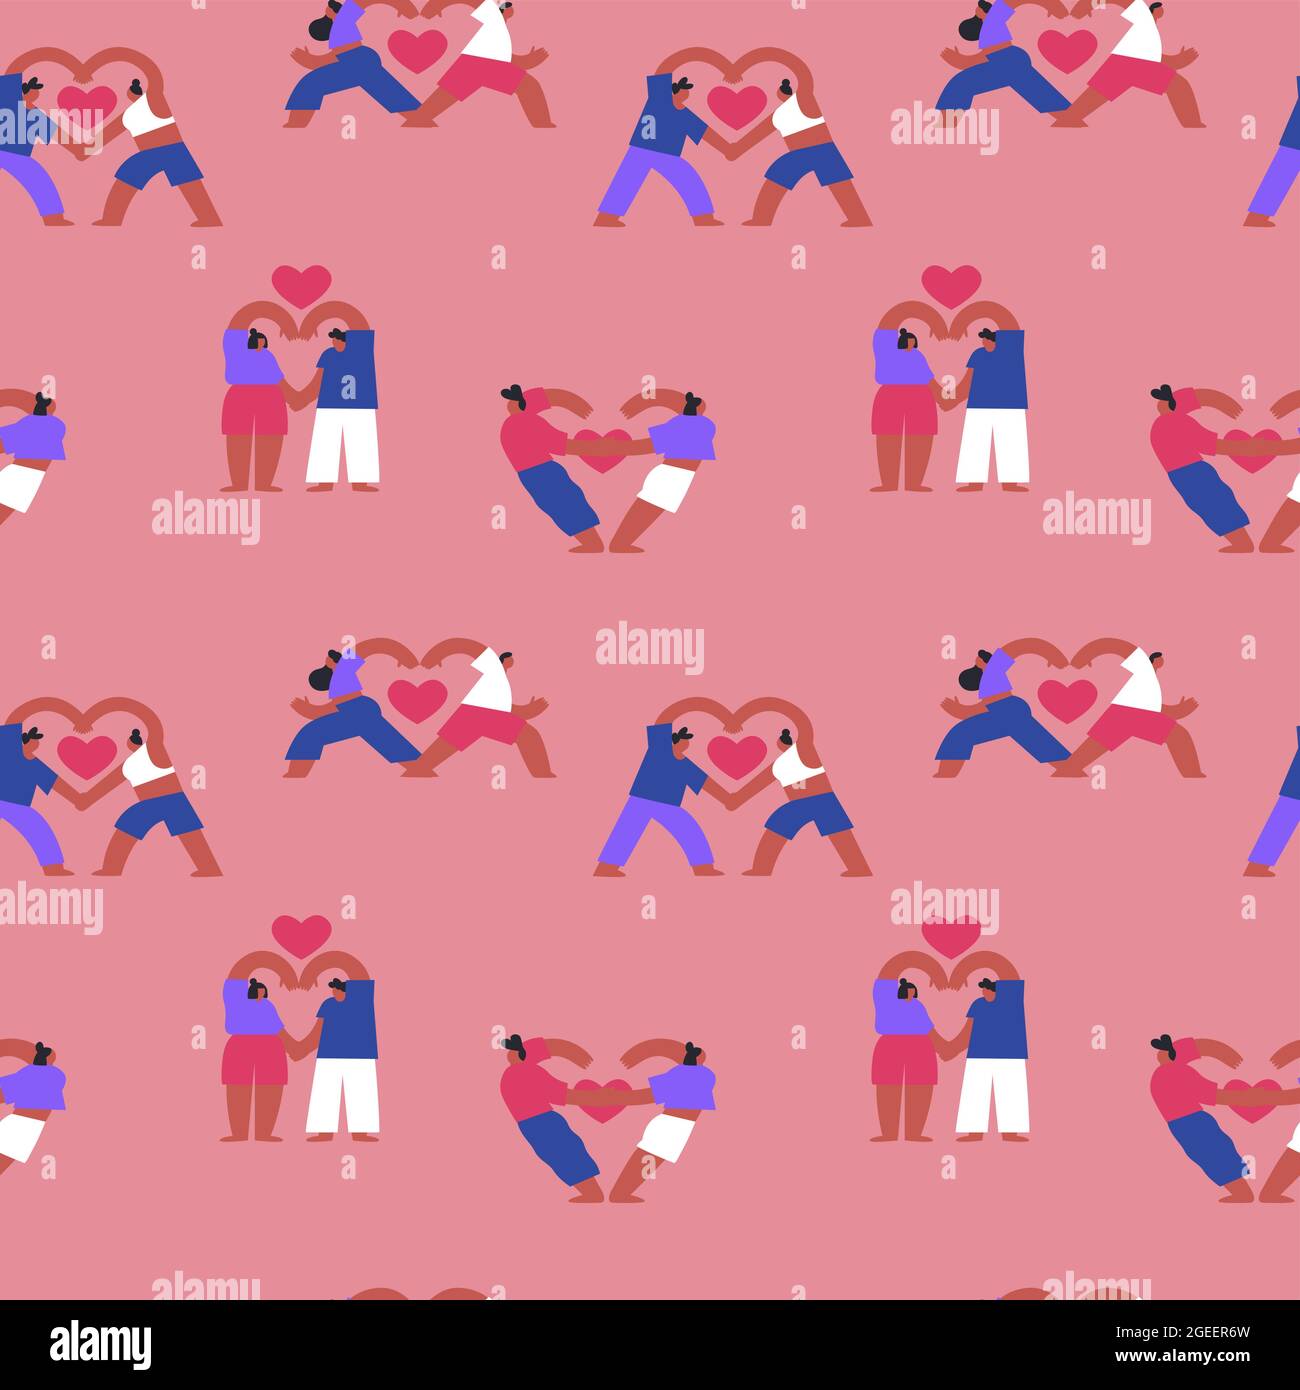 Paare Yoga nahtlose Muster Illustration von jungen Menschen in der Liebe tun verschiedene Fitness-Meditation Posen mit Herzformen. Romantischer Cartoon-Charakter Stock Vektor